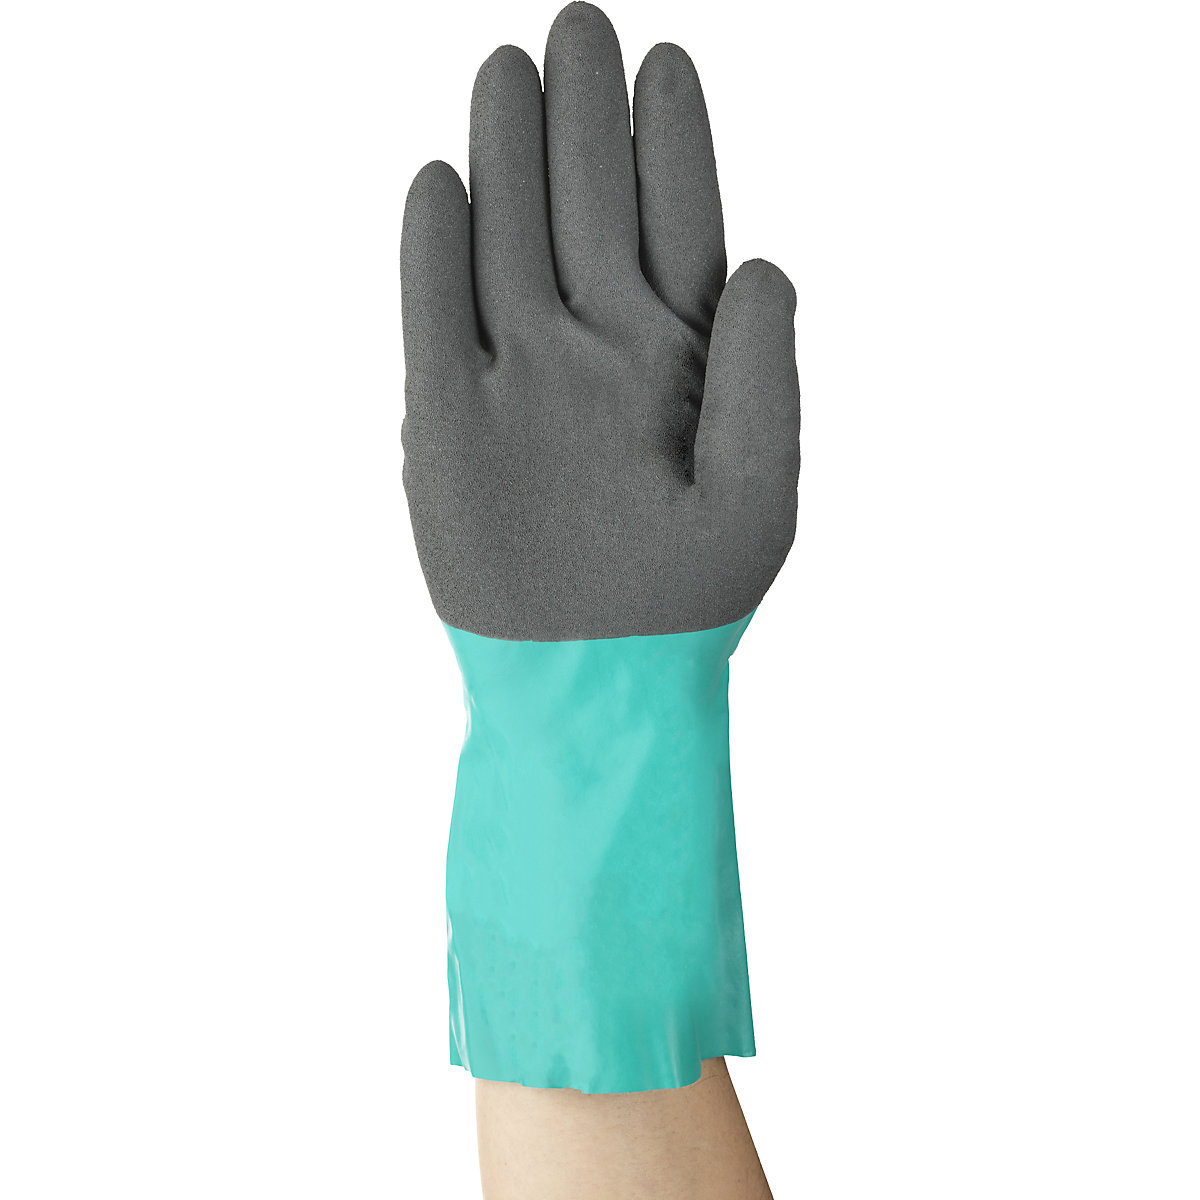 Pracovní rukavice AlphaTec® 58-270 – Ansell (Obrázek výrobku 2)-1